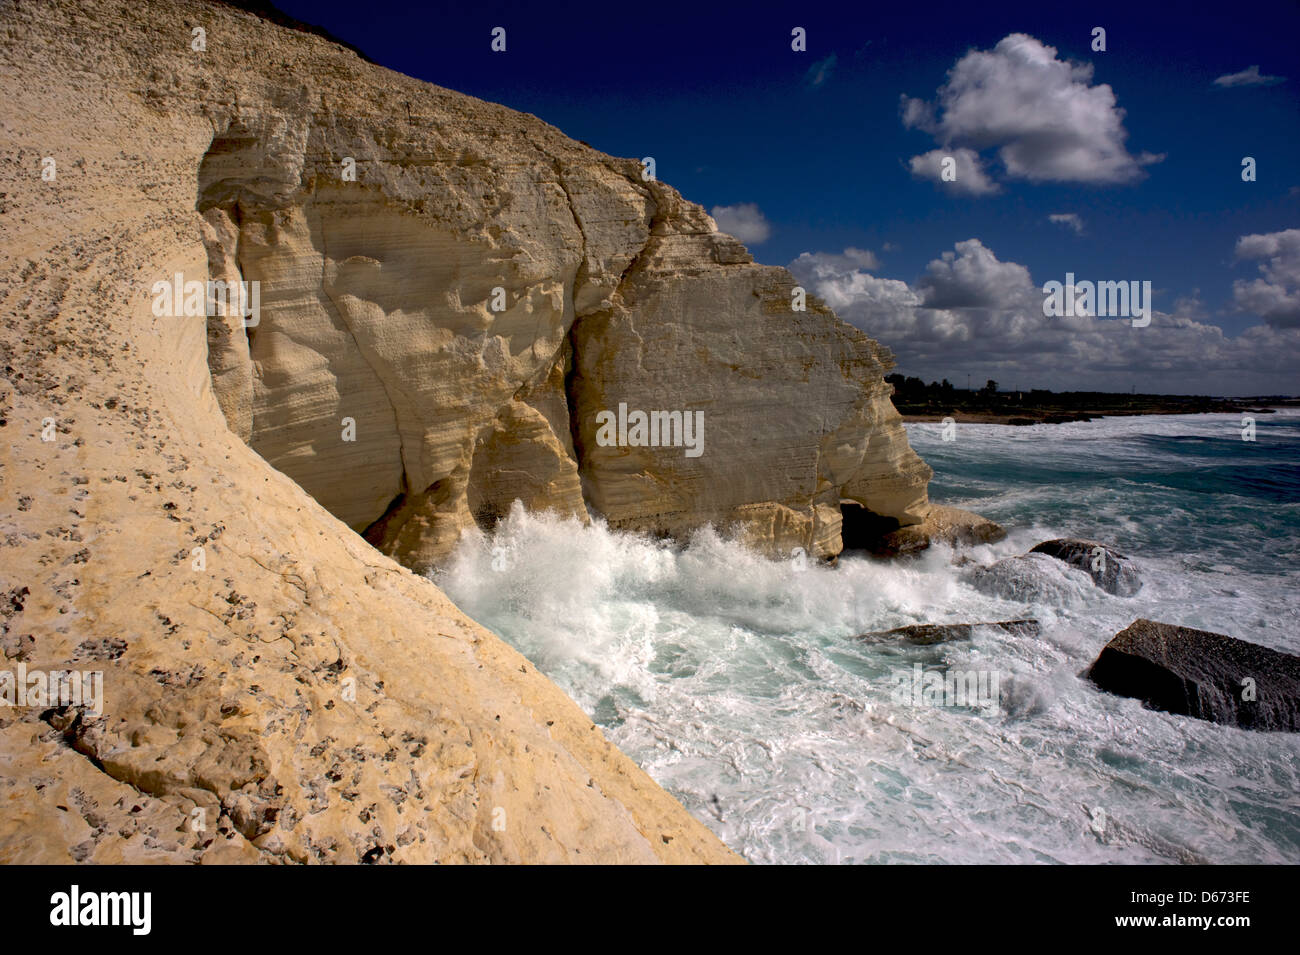 RAS-an-Nakura, famose Grotte, una formazione geologica al confine tra Israele e Libano, sulla costa del Mediterraneo. Galilea occidentale Foto Stock